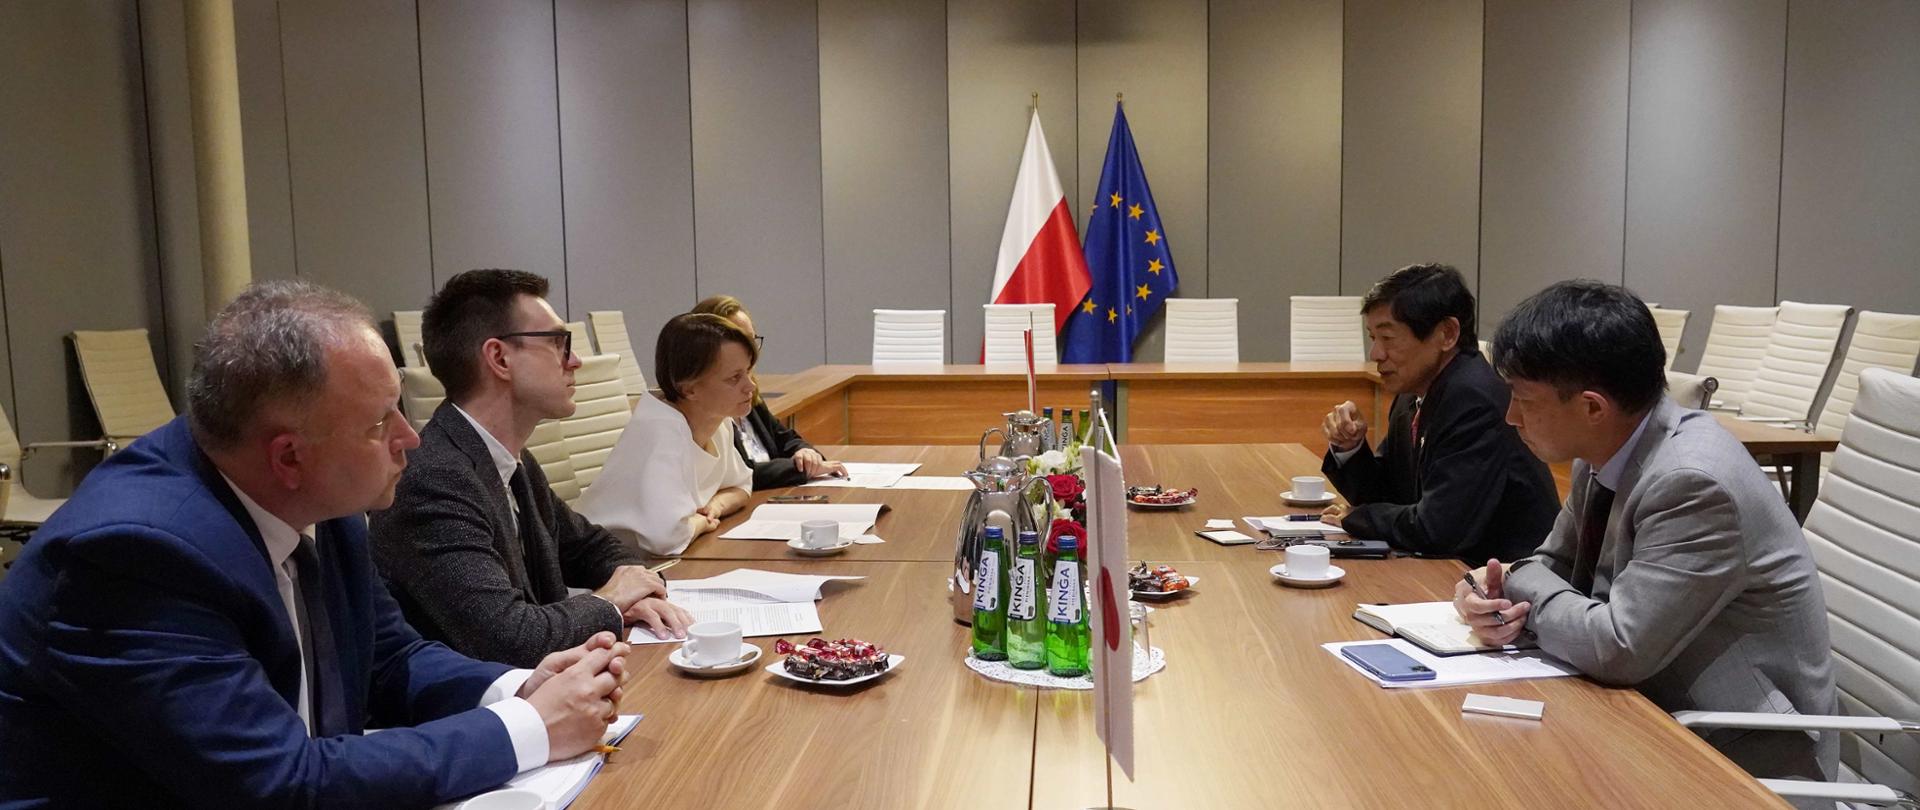 Wiceminister Jadwiga Emilewicz (po lewej stronie) wraz z pracownikami siedzi przy stole i rozmawia z przedstawicielami z Japonii